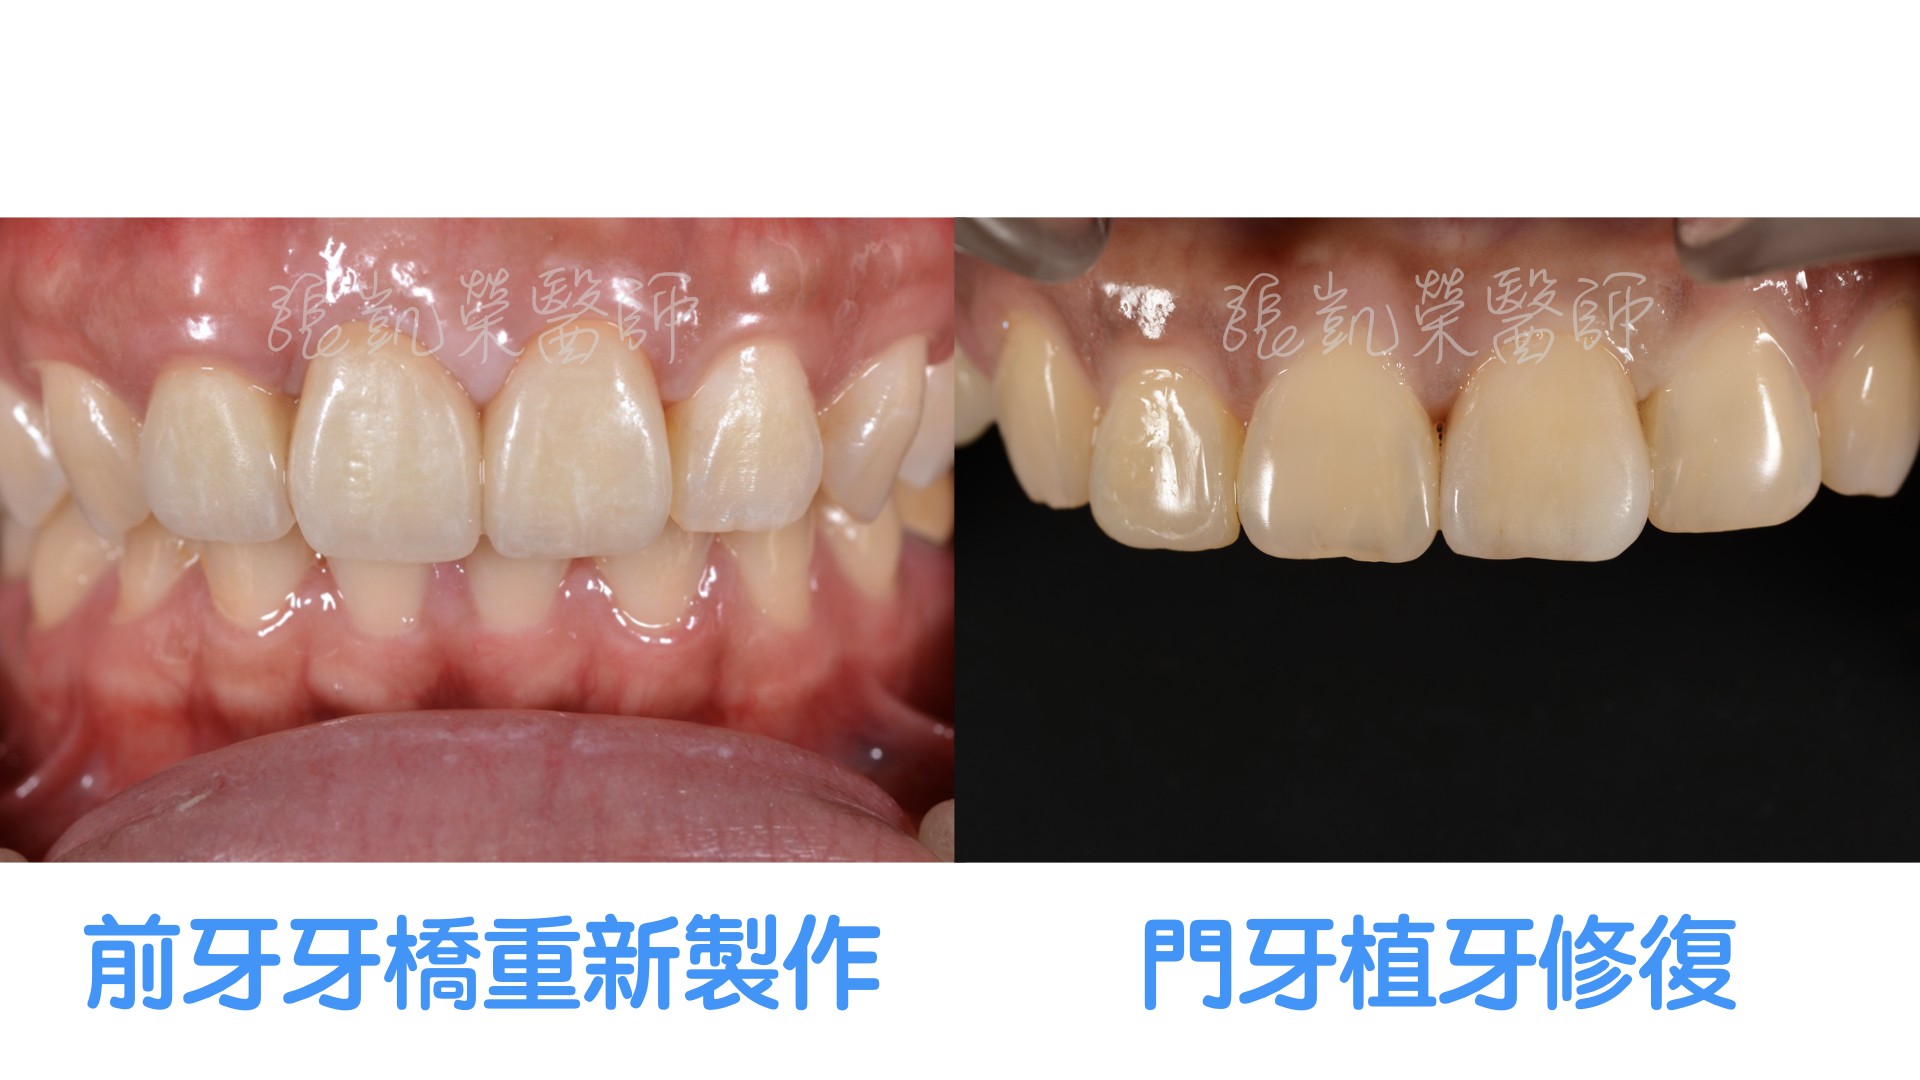 假牙不密貼該怎麼處理？part II:牙齒組織損傷太嚴重，無法修復